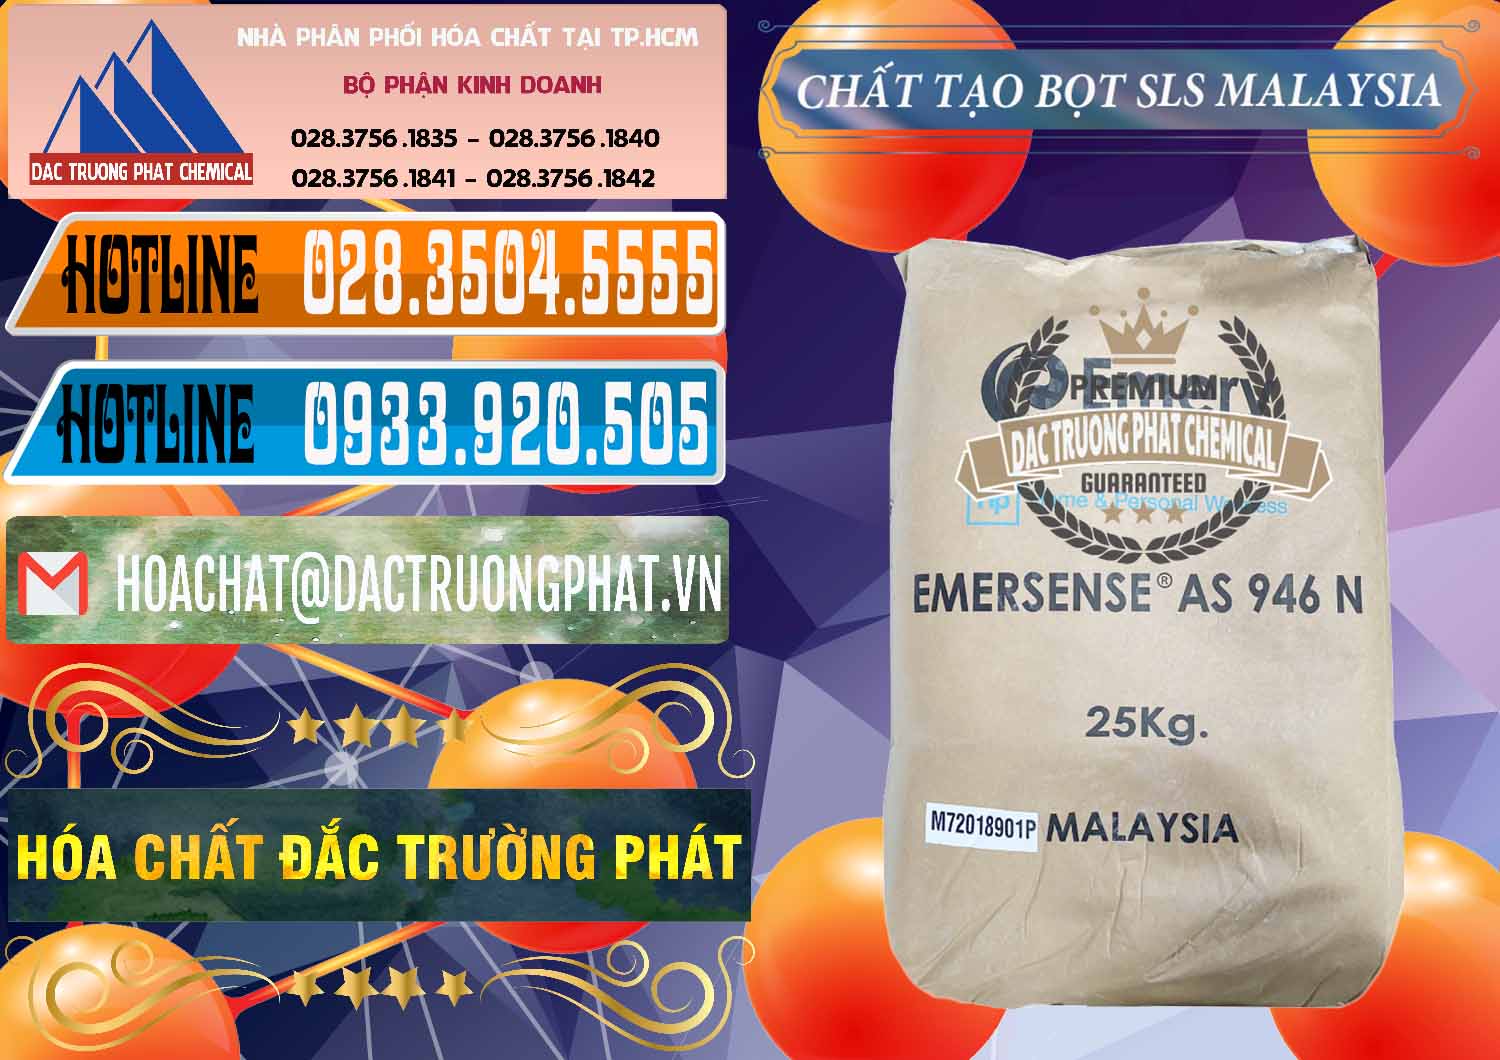 Cty bán ( phân phối ) Chất Tạo Bọt SLS Emery - Emersense AS 946N Mã Lai Malaysia - 0423 - Nhà cung ứng và phân phối hóa chất tại TP.HCM - stmp.net